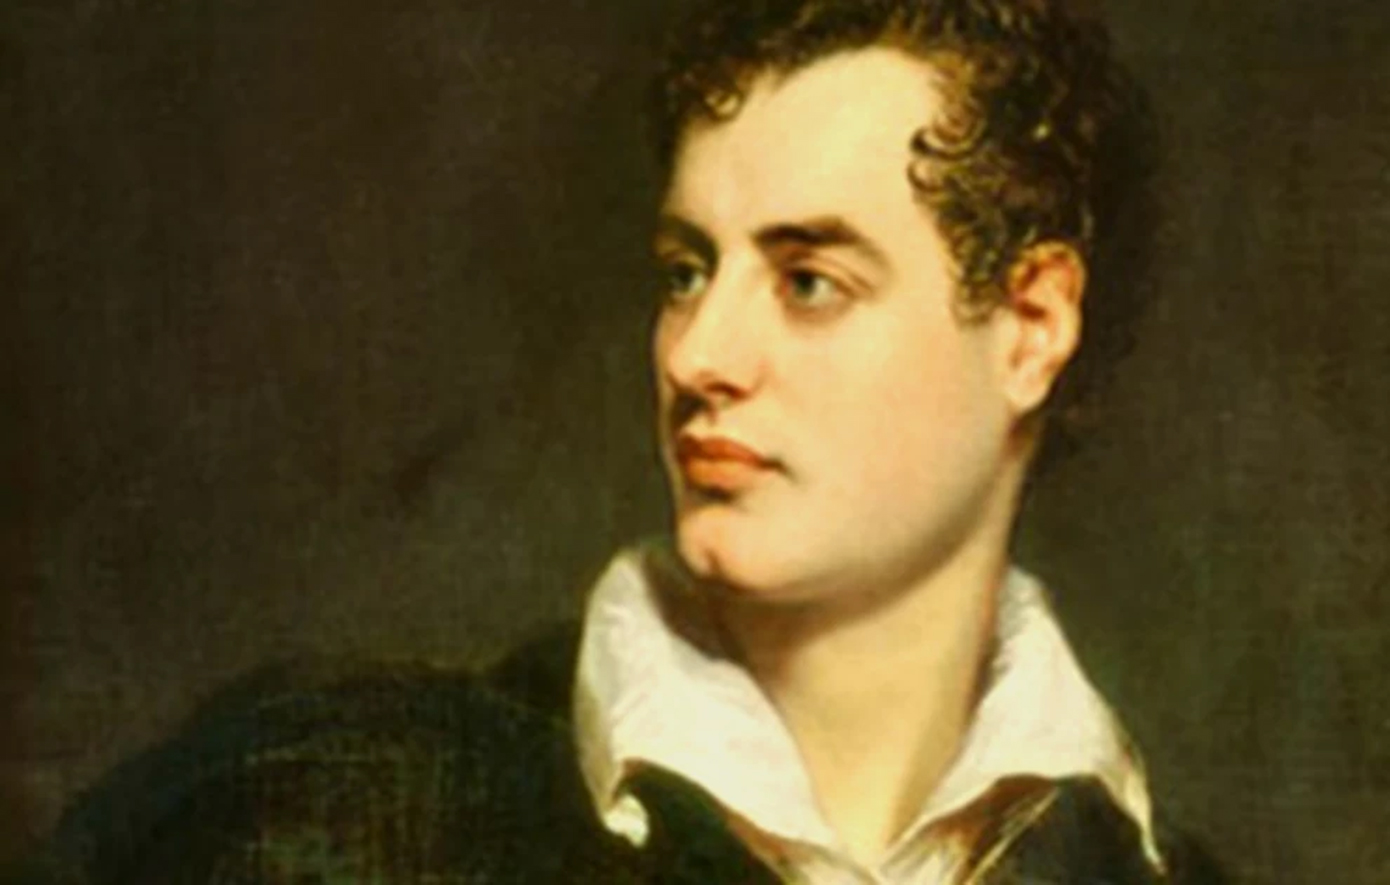 Σαν σήμερα 19 Απριλίου:  Πέθανε ο σπουδαίος φιλέλληνας και ποιητής Λόρδος Βύρων πριν από 200 χρόνια